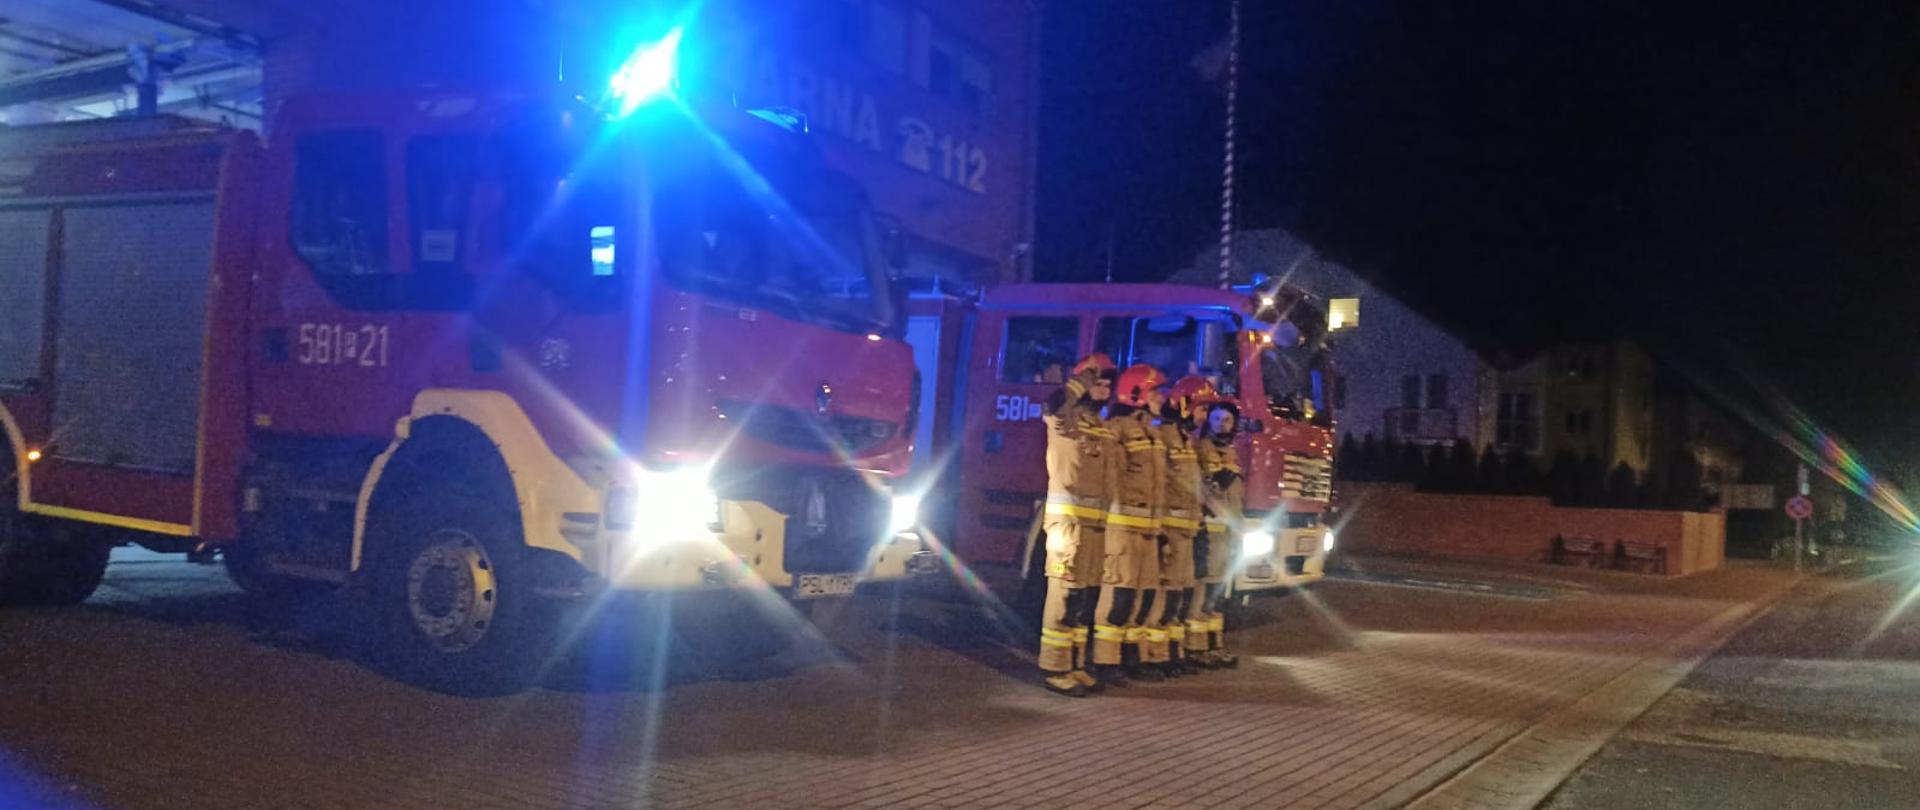 Strażacy ubrani w ubrania specjalne koloru piaskowego stoją pomiędzy dwoma samochodami pożarniczymi z włączonymi światłami błyskowymi oraz drogowymi na tle budynku Komendy PSP w Słupcy w oddali maszt.